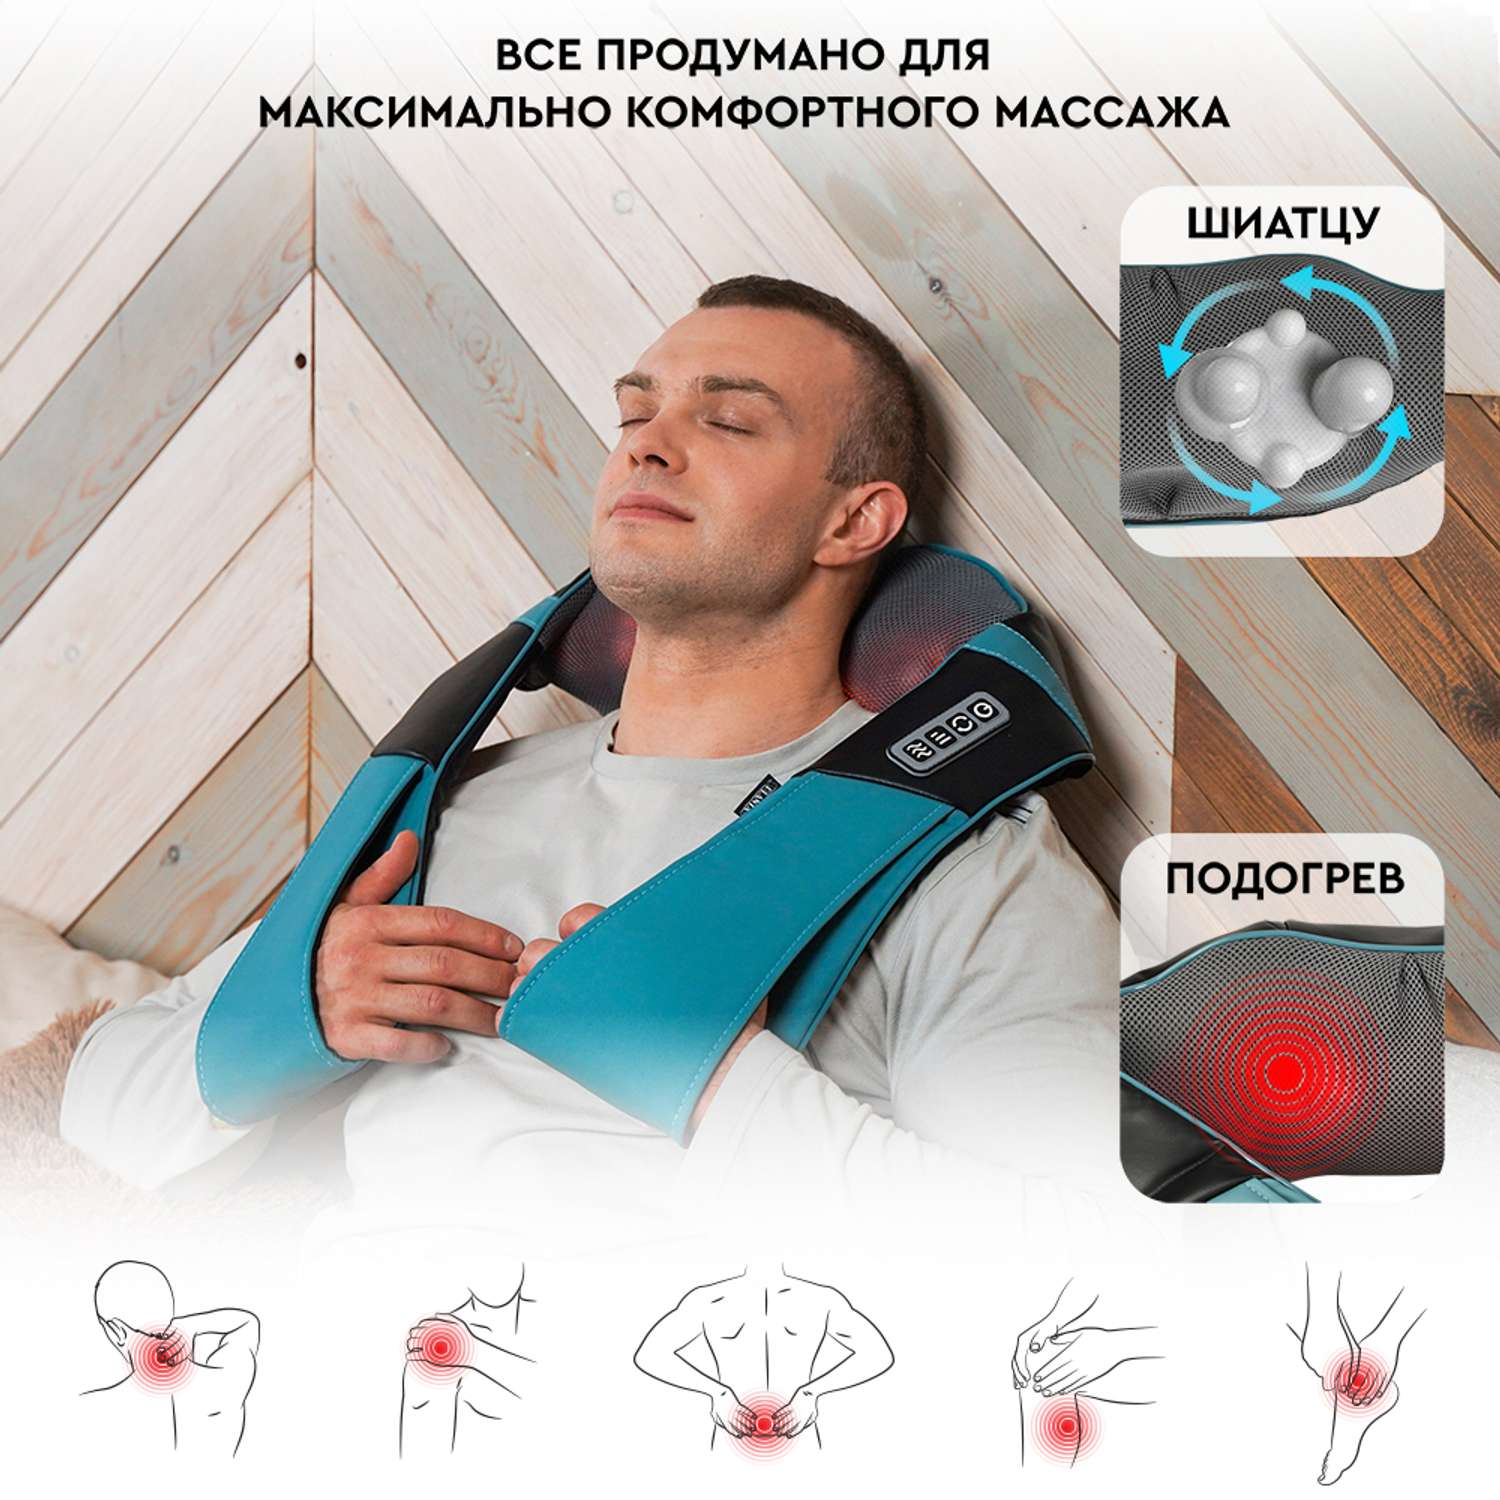 Массажер для шеи и плеч Planta MSH-600 3 степени интенсивности реверс роликовый Шиацу массаж - фото 7